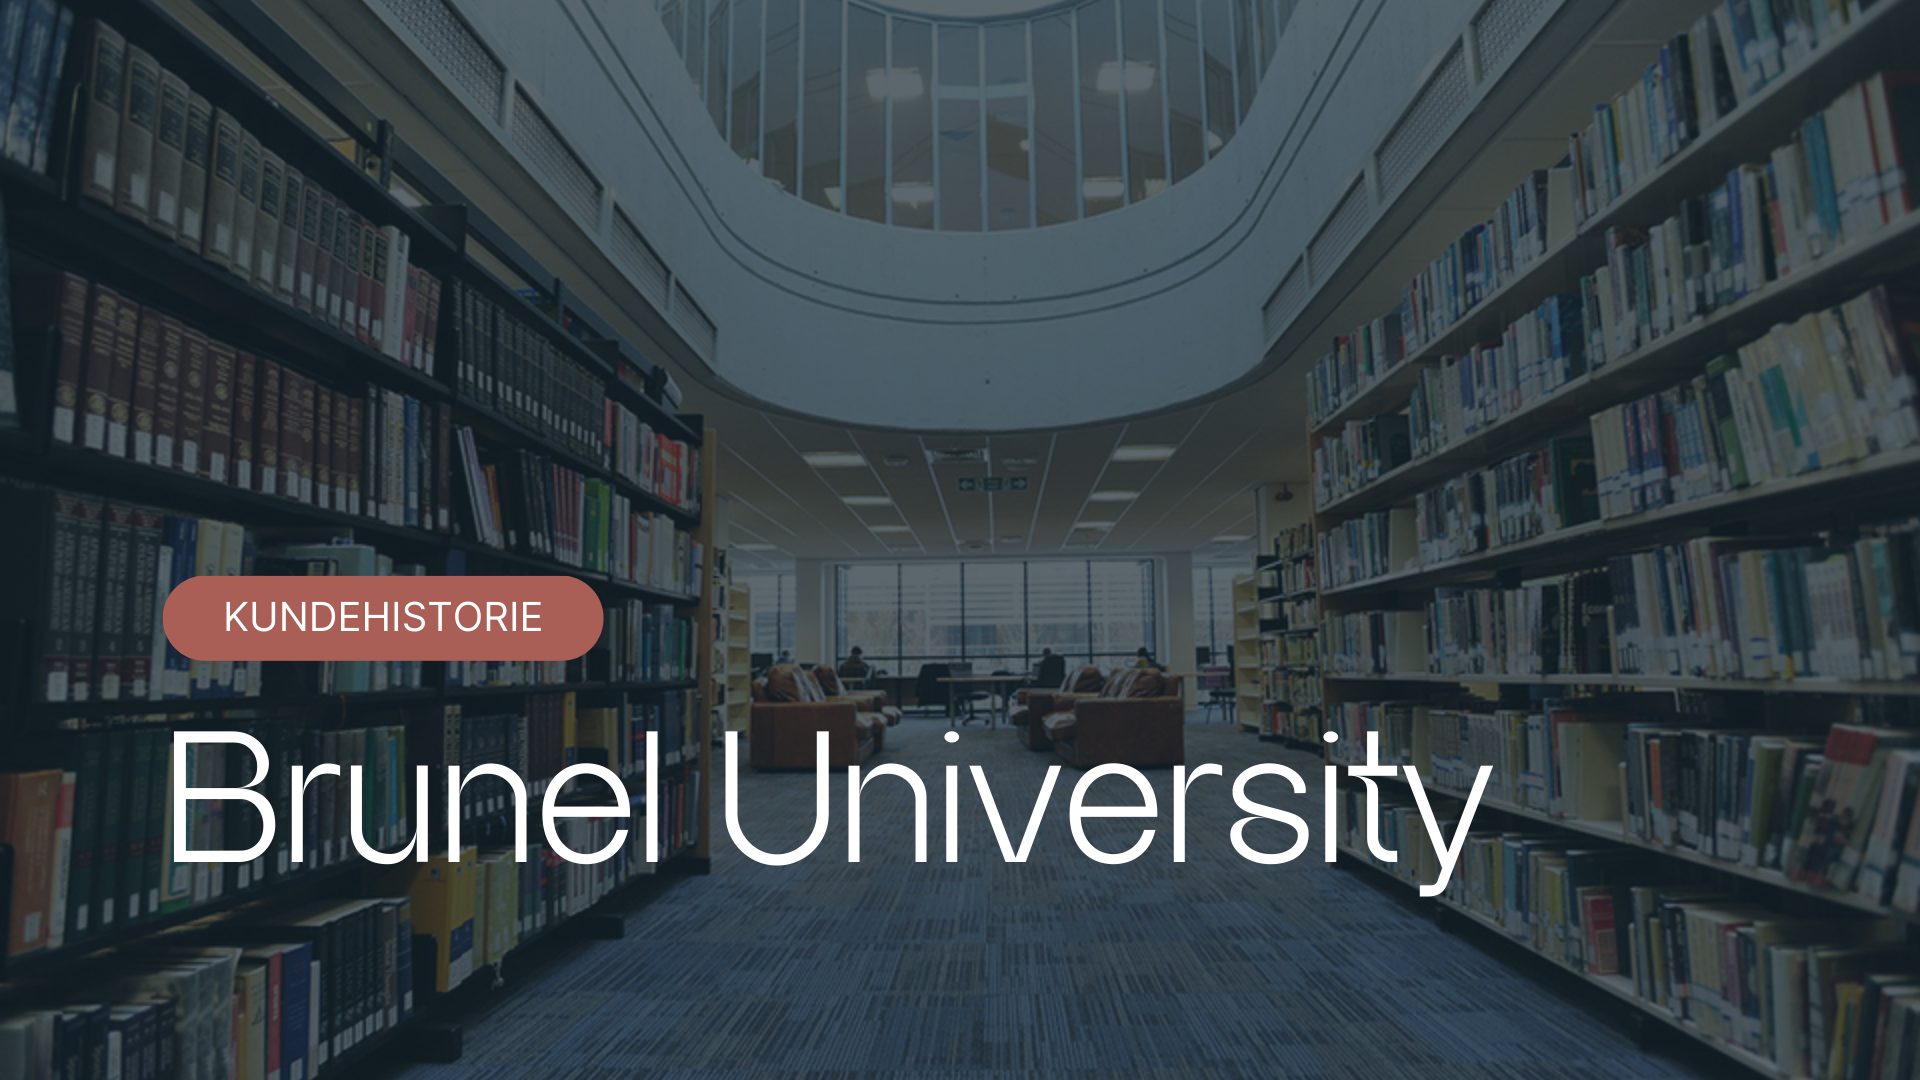 Brunel University London velger Arribatec for IT-tjenester